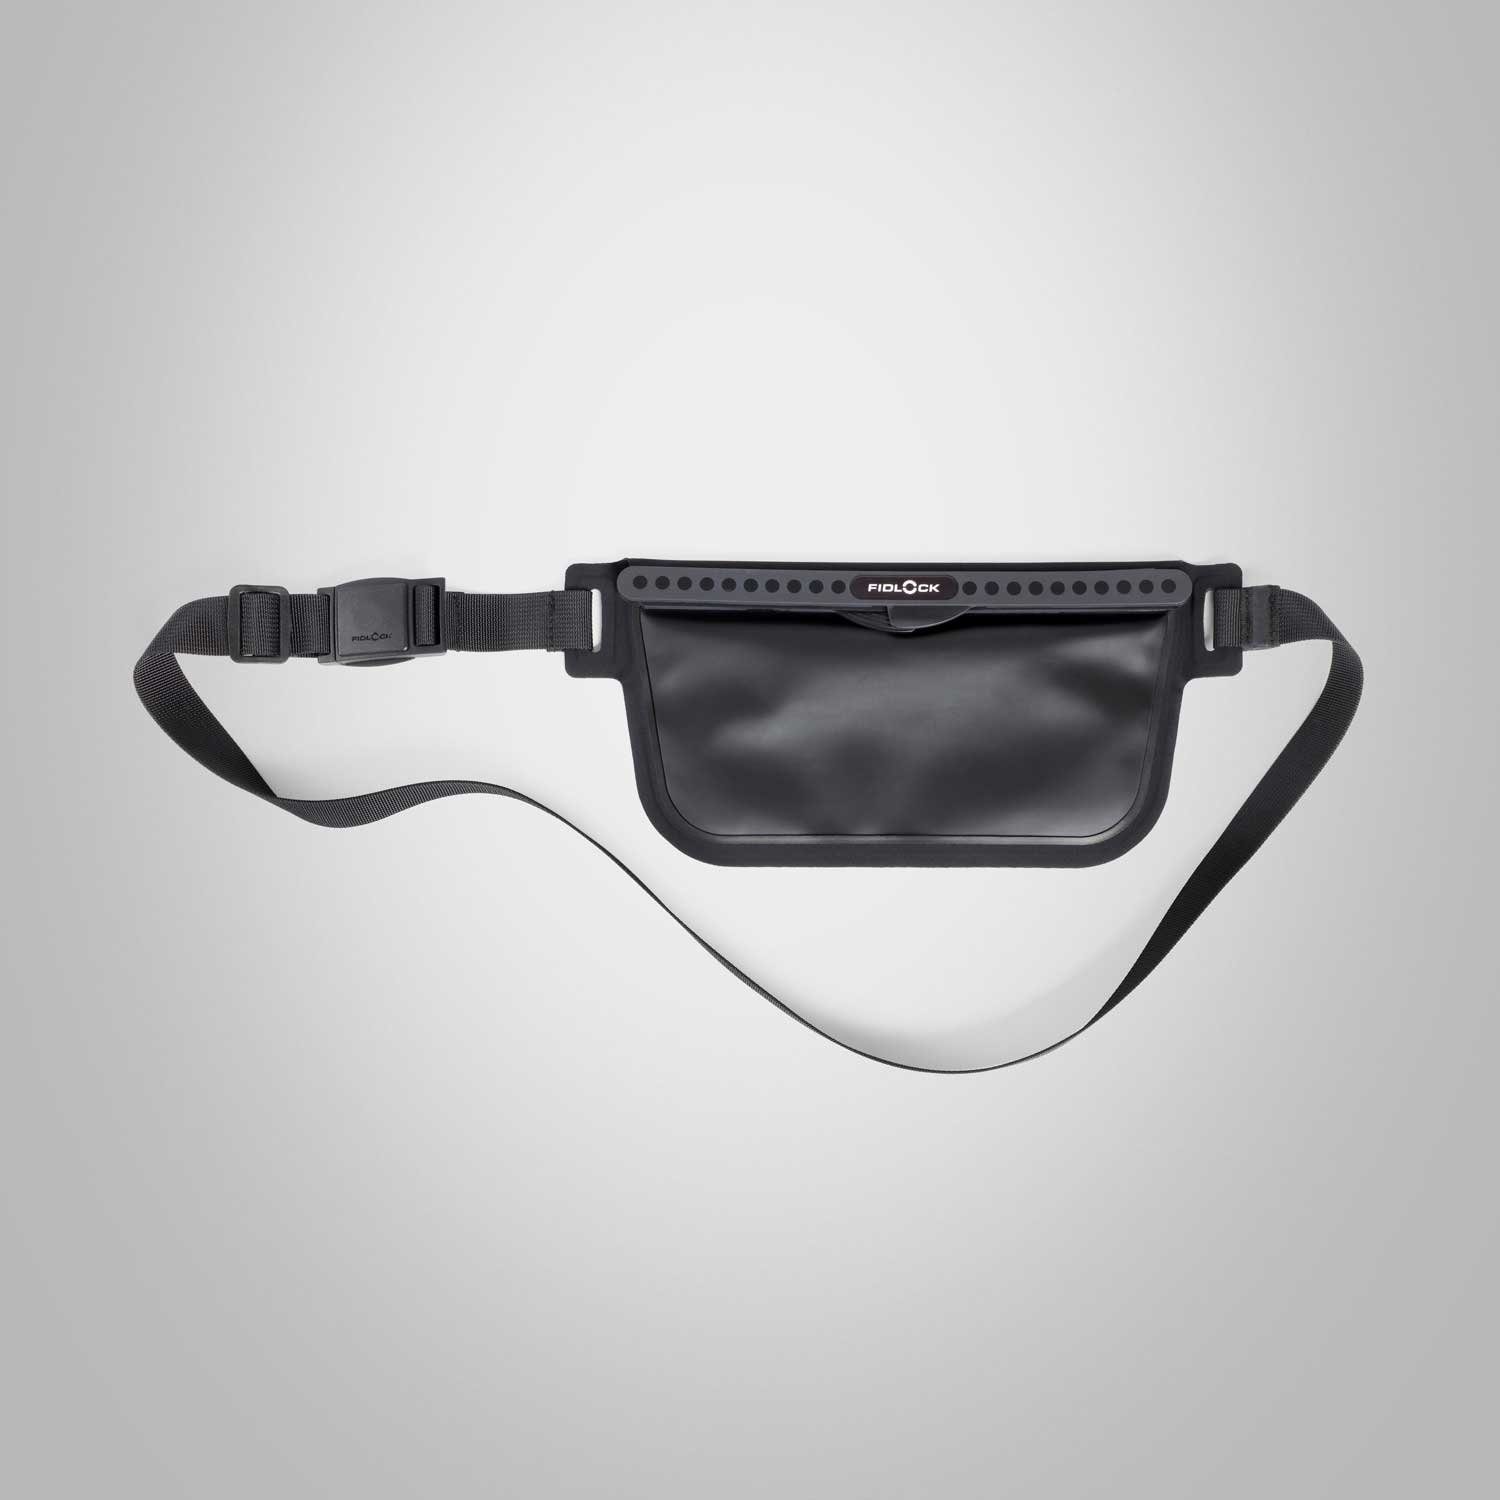 Fidlock sling Smartphonetasche bag Schwarz HERMETIC